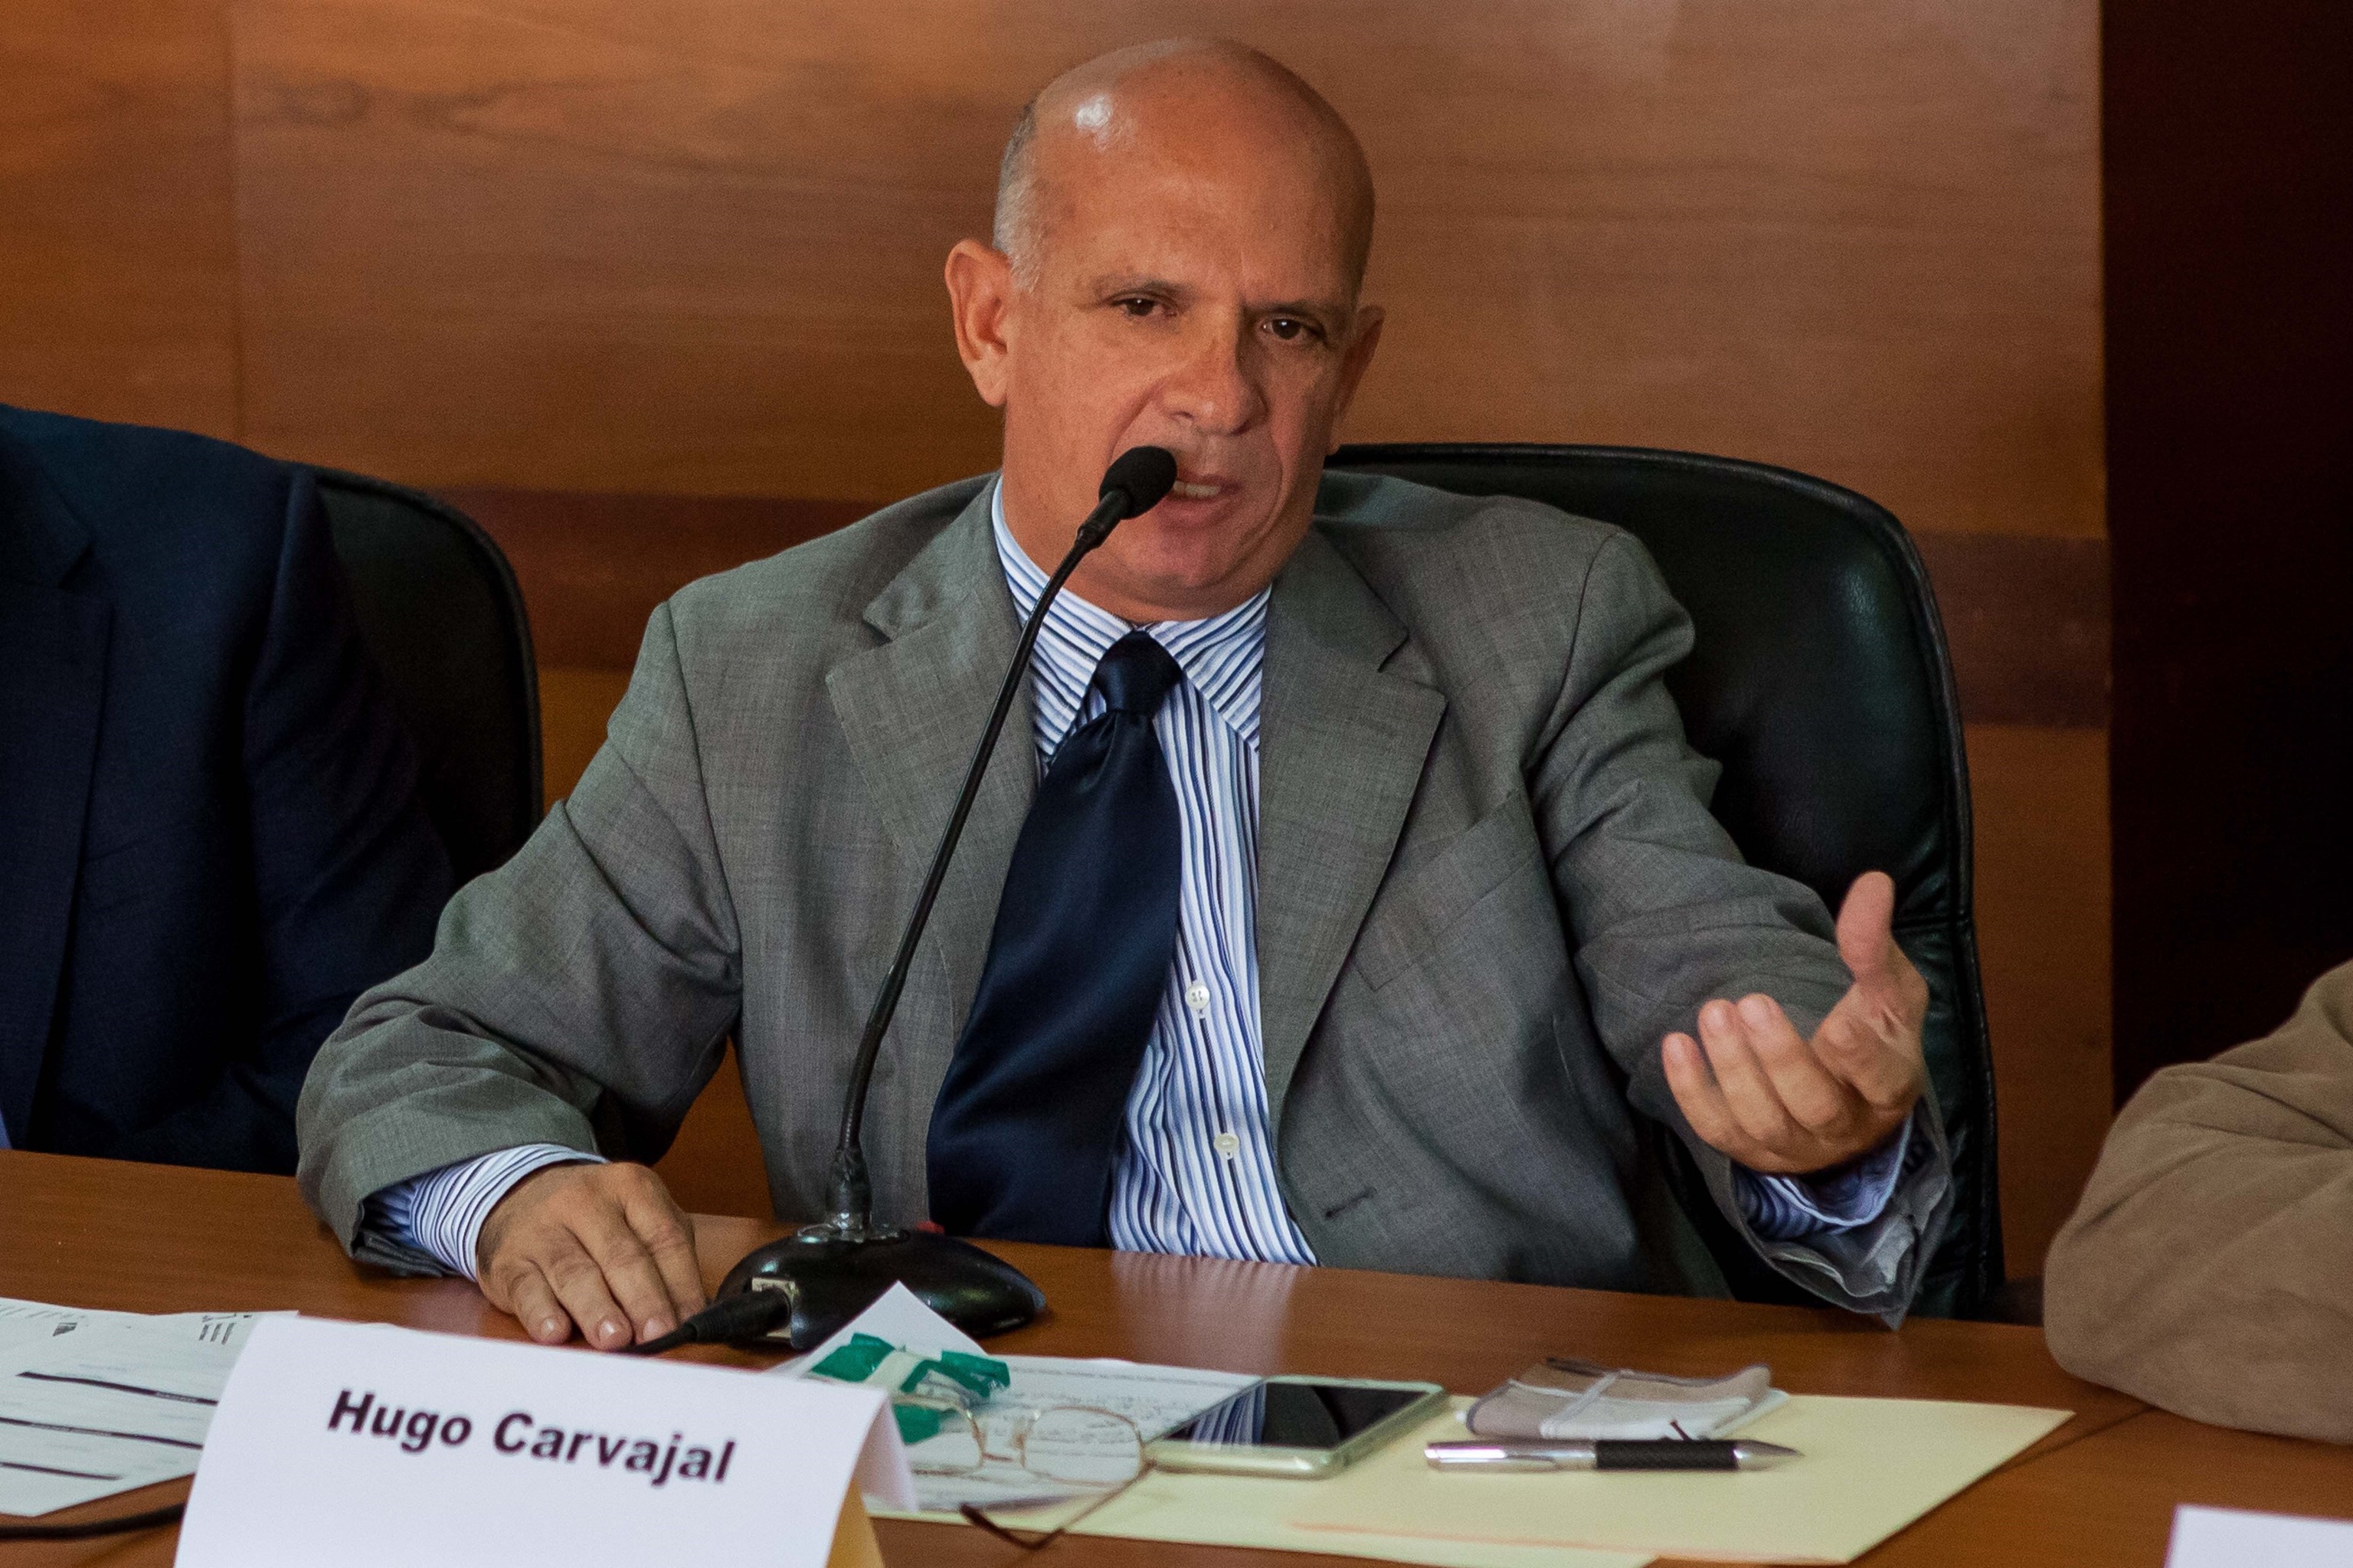 El ex jefe de la Inteligencia militar de Venezuela Hugo Carvajal, en Caracas en 2019.